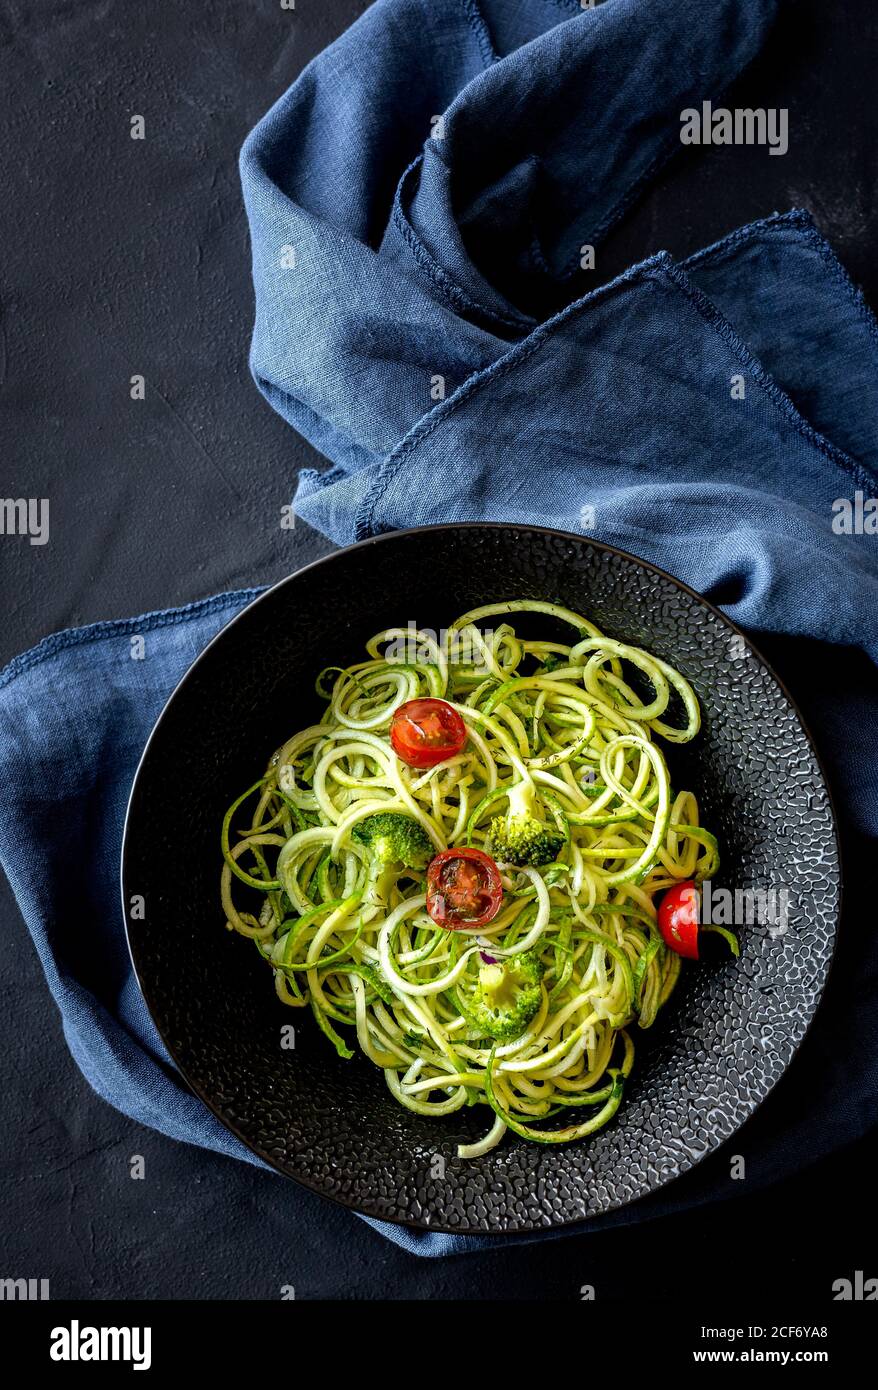 Spaghetti de courgettes maison avec sauce au pesto, brocoli et tomates cerises d'en haut. Concept alimentaire végétalien.plat.vue du dessus Banque D'Images